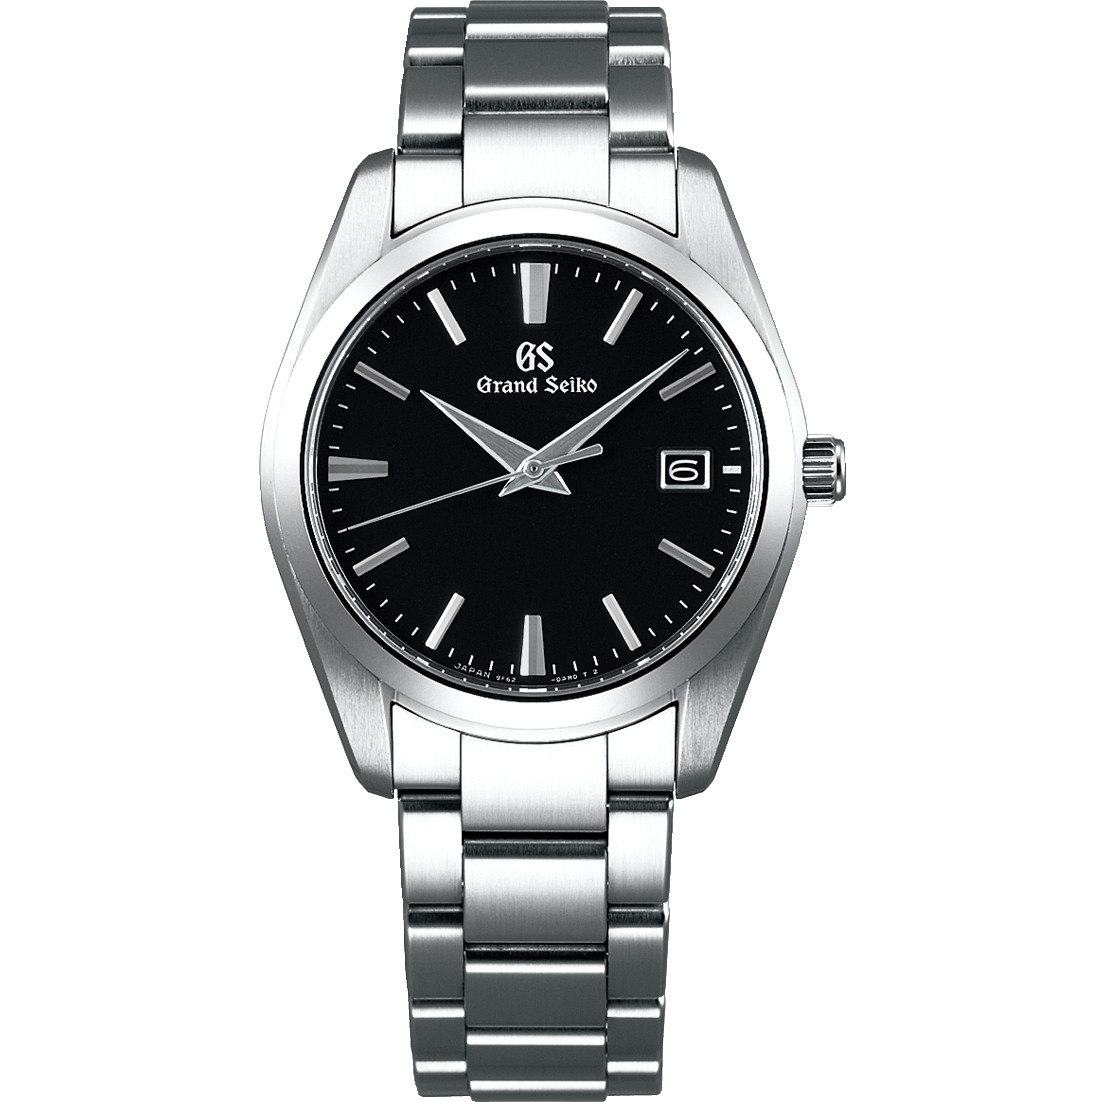 Grand Seiko SBGX261, 9F62 Quartz, black dial, stainless steel, men's watches